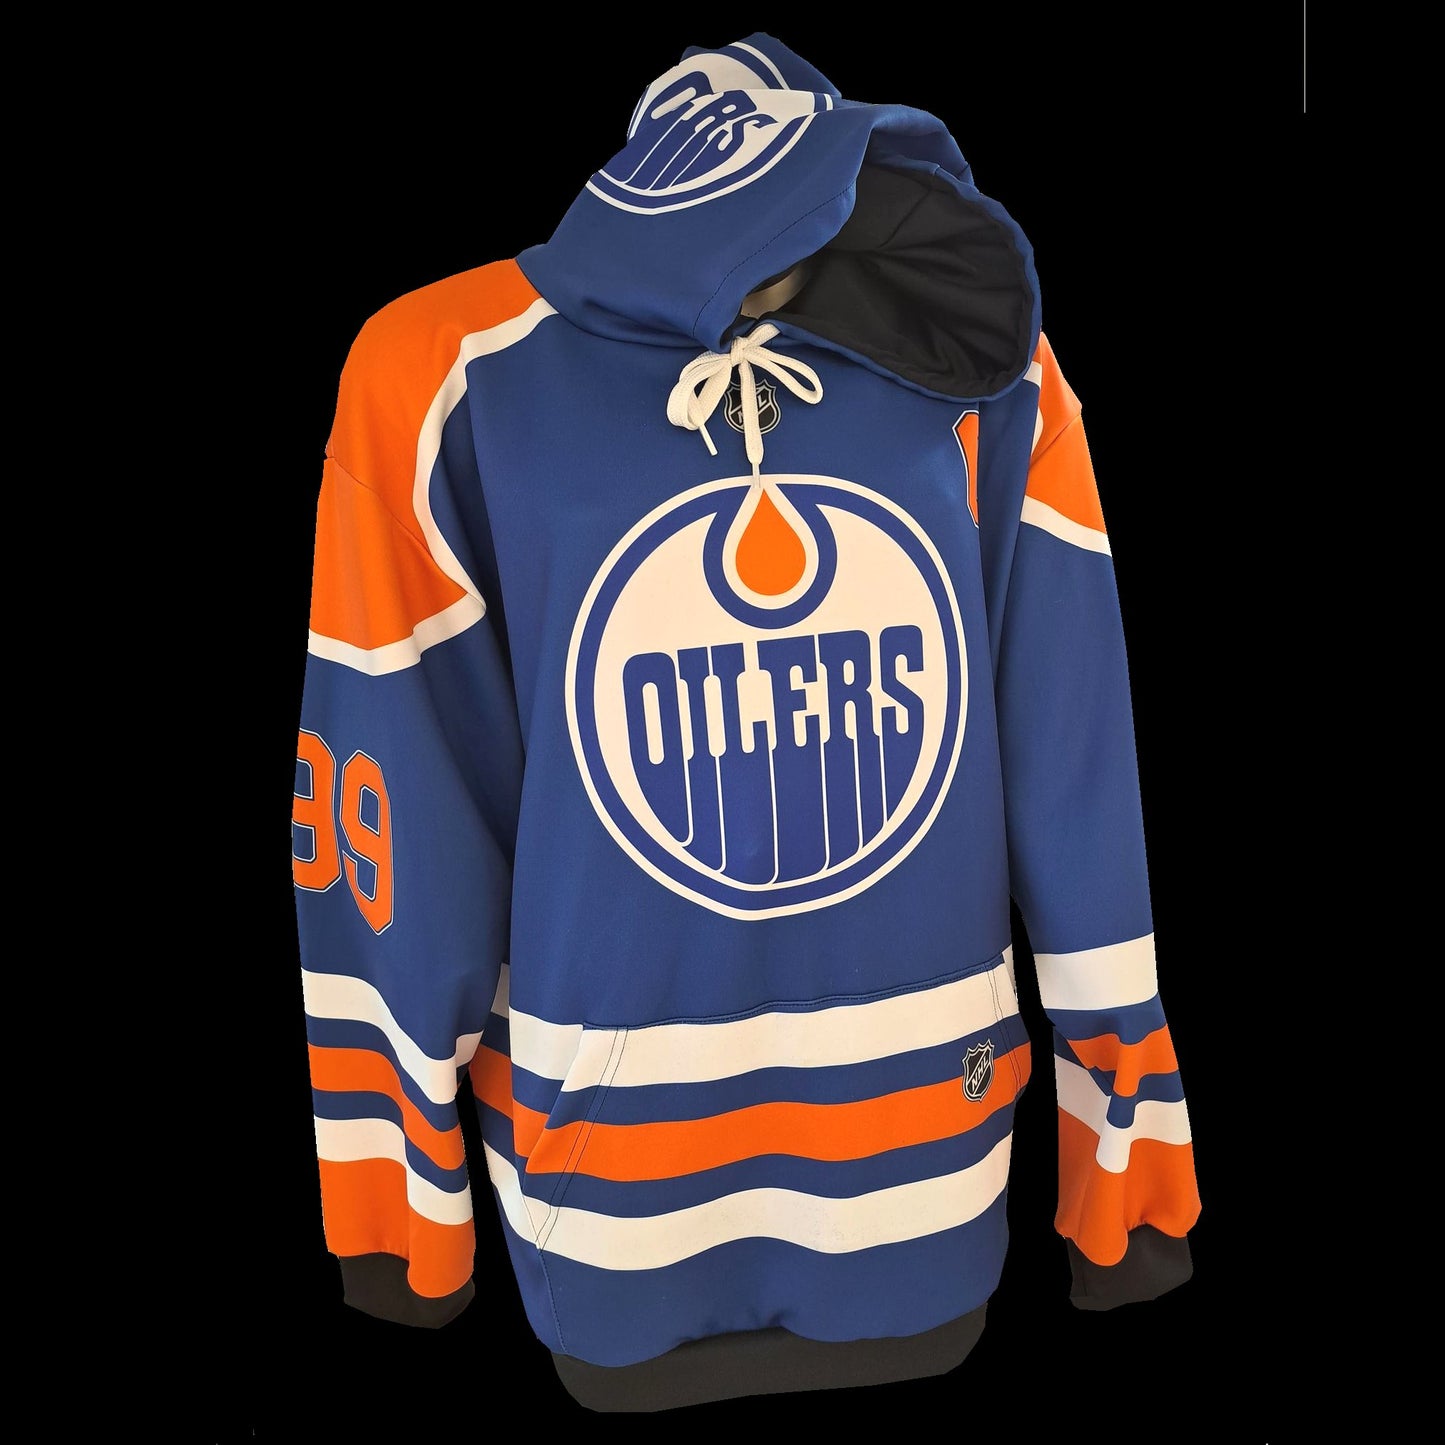 Wayne Gretzky - Edmonton Oilers - Hoody For Adults